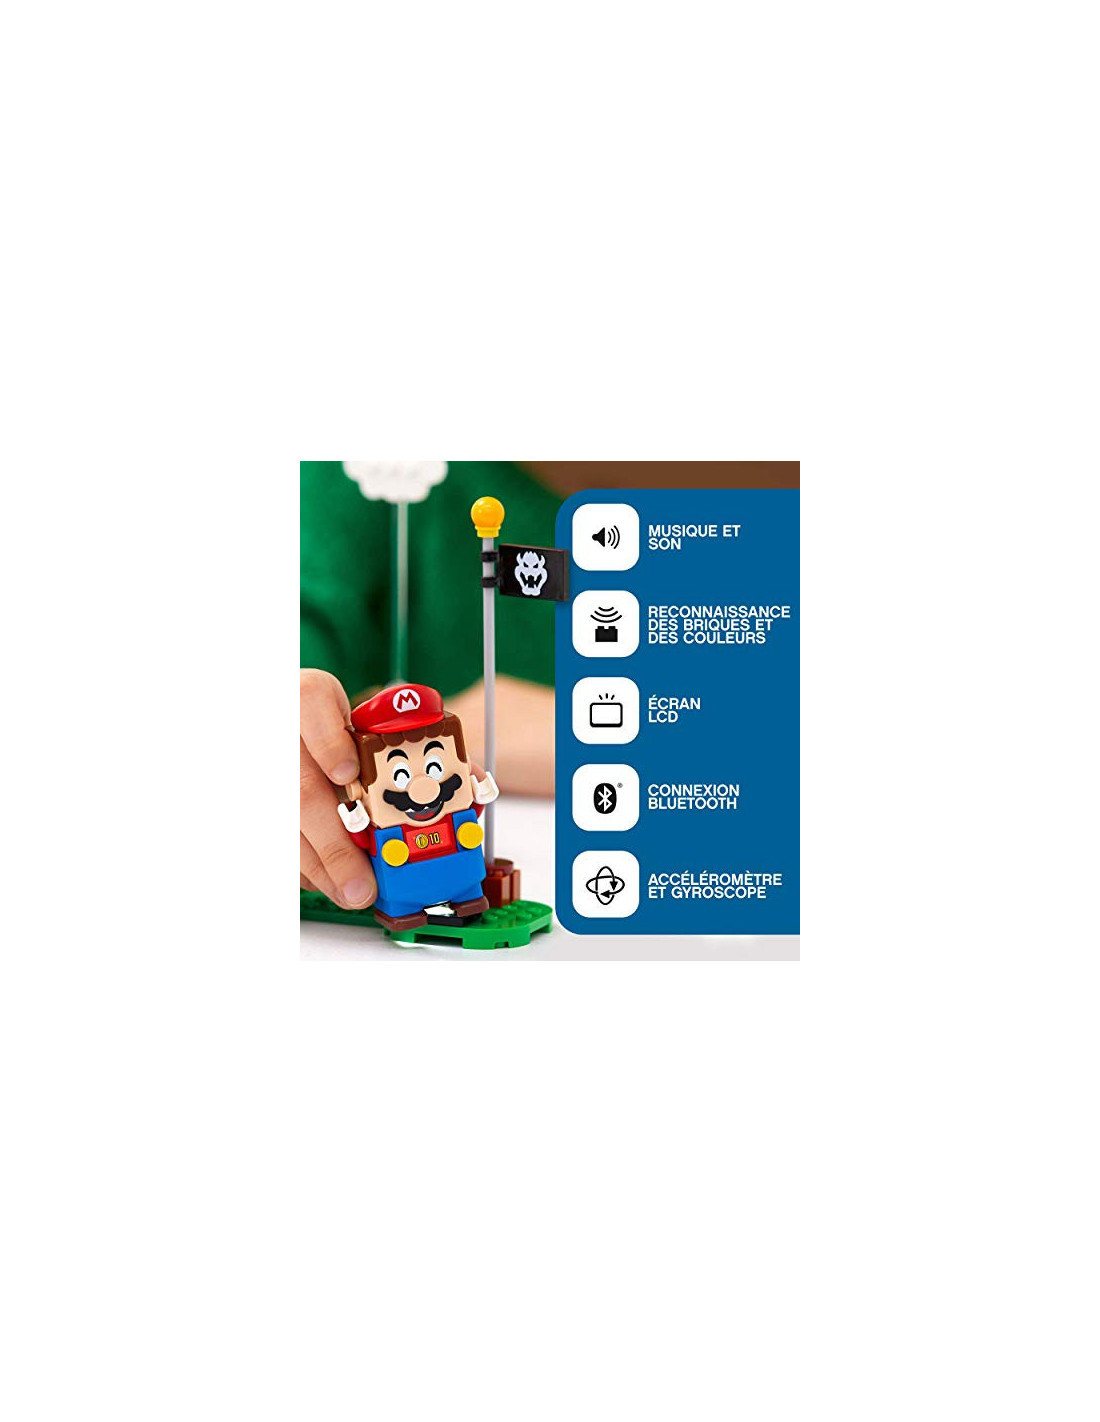 Les aventures de Mario LEGO Super Mario (71360), 6 ans et plus